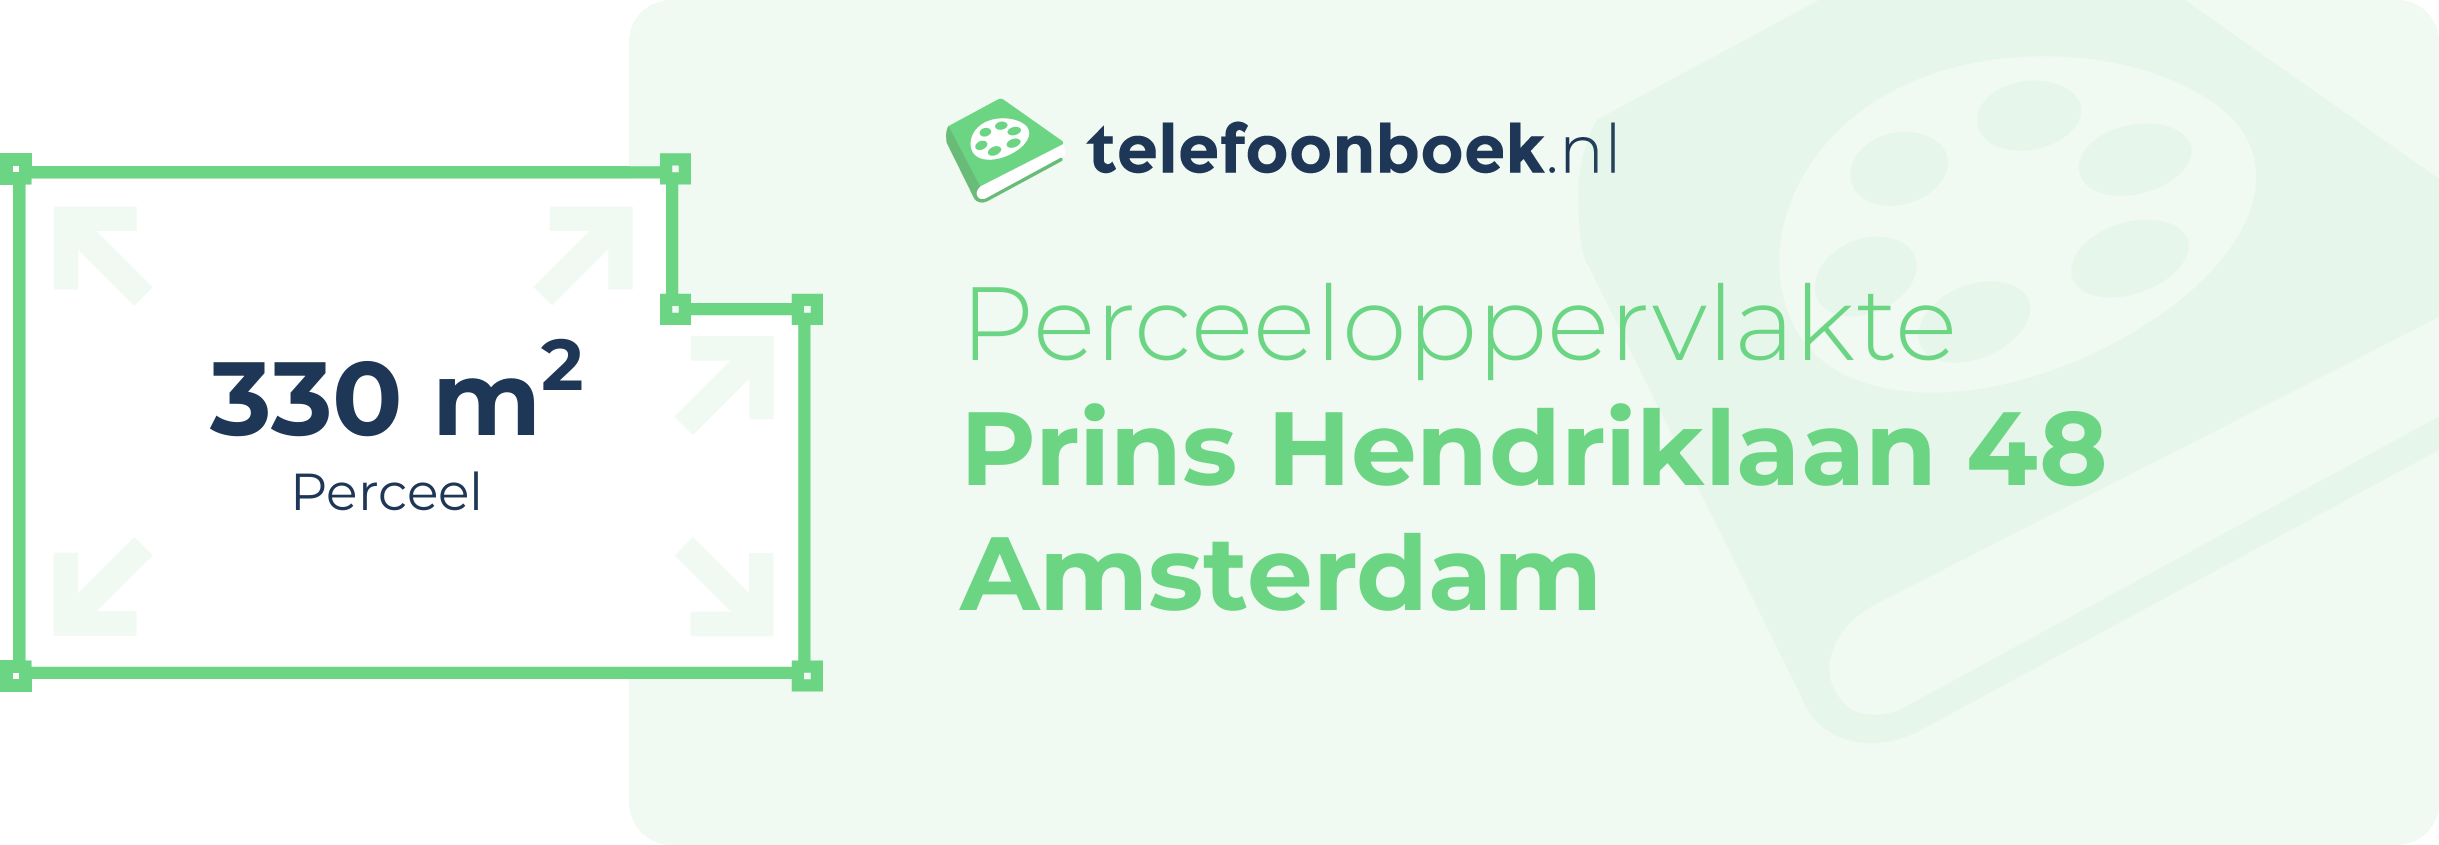 Perceeloppervlakte Prins Hendriklaan 48 Amsterdam